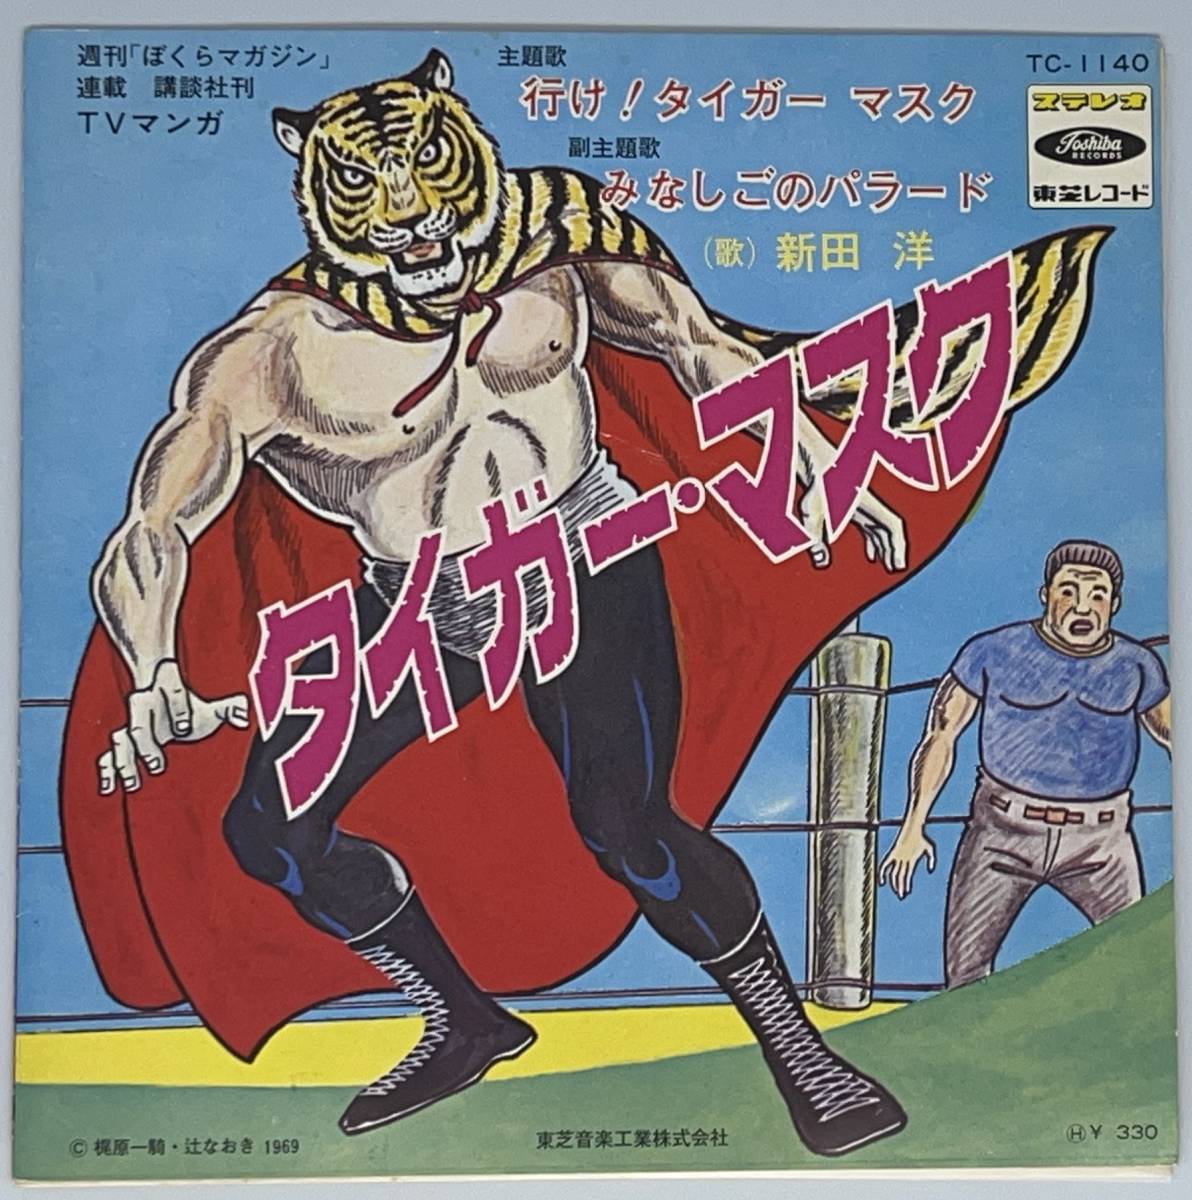  Tiger Mask line .! Tiger Mask /. нет .. pala-do одиночный запись новый рисовое поле .* Kikuchi Shunsuke красный запись +sono сиденье 